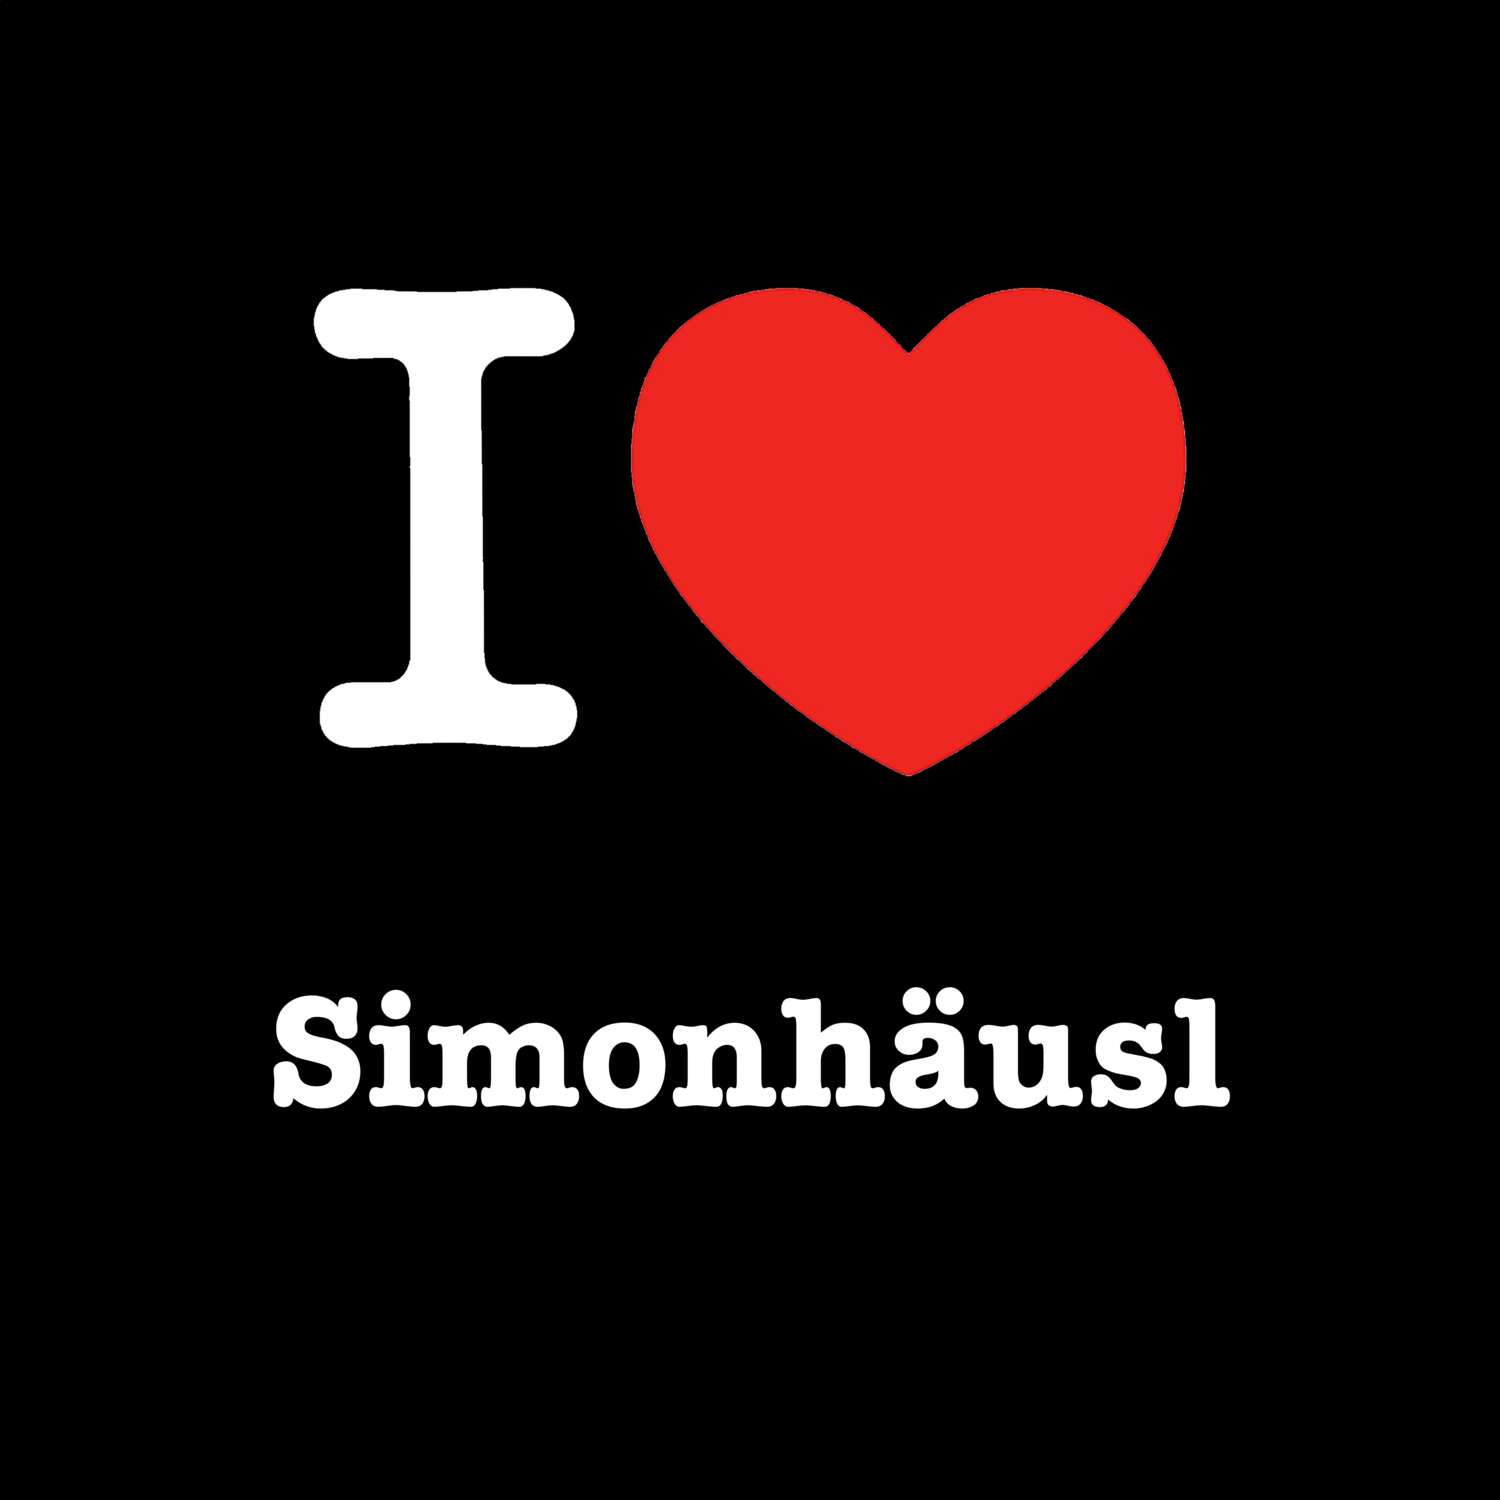 Simonhäusl T-Shirt »I love«